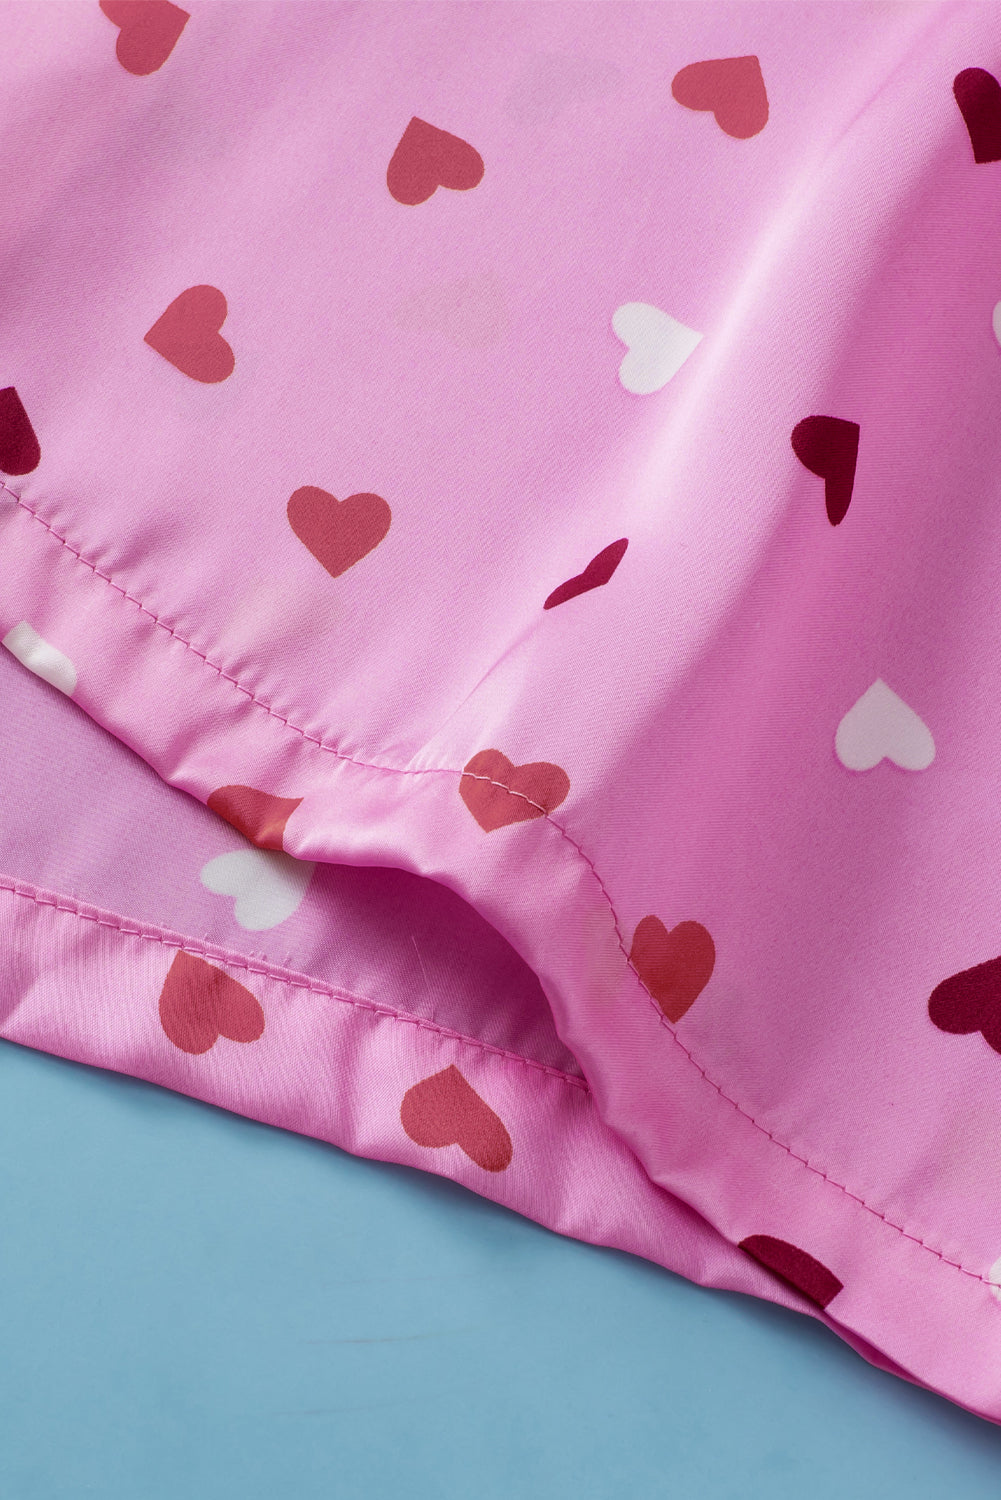 Vêtements de nuit roses à imprimé en forme de coeur de grande taille pour la Saint-Valentin